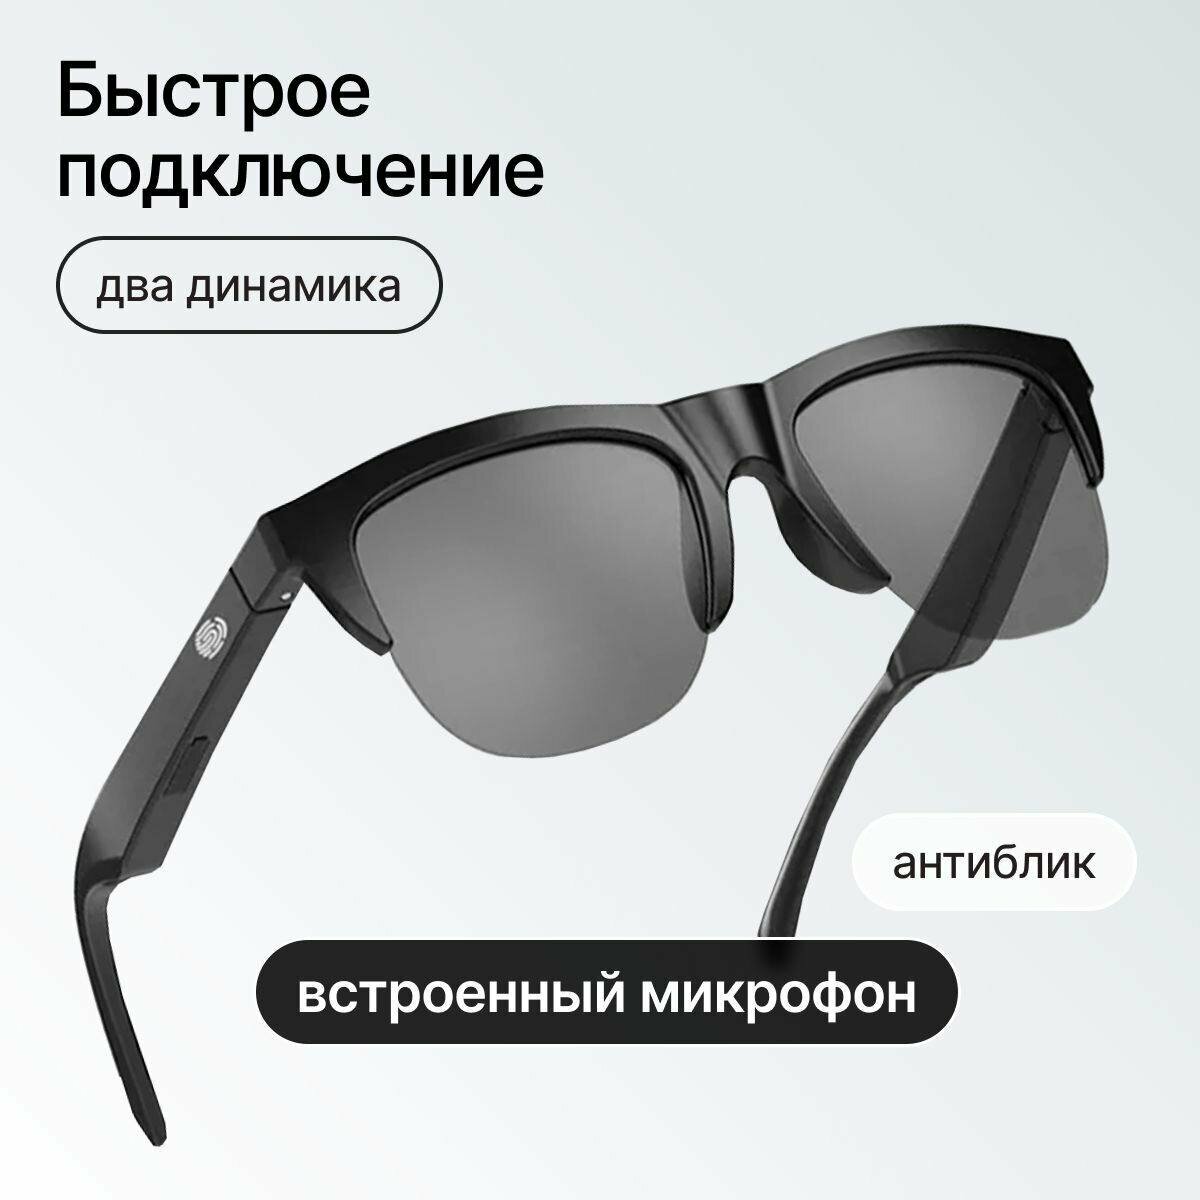 Умные Hi-Fi солнцезащитные очки плюс беспроводные bluetooth наушники, AIR Glassess - Стерео двойной динамик сенсорный для путешествий.